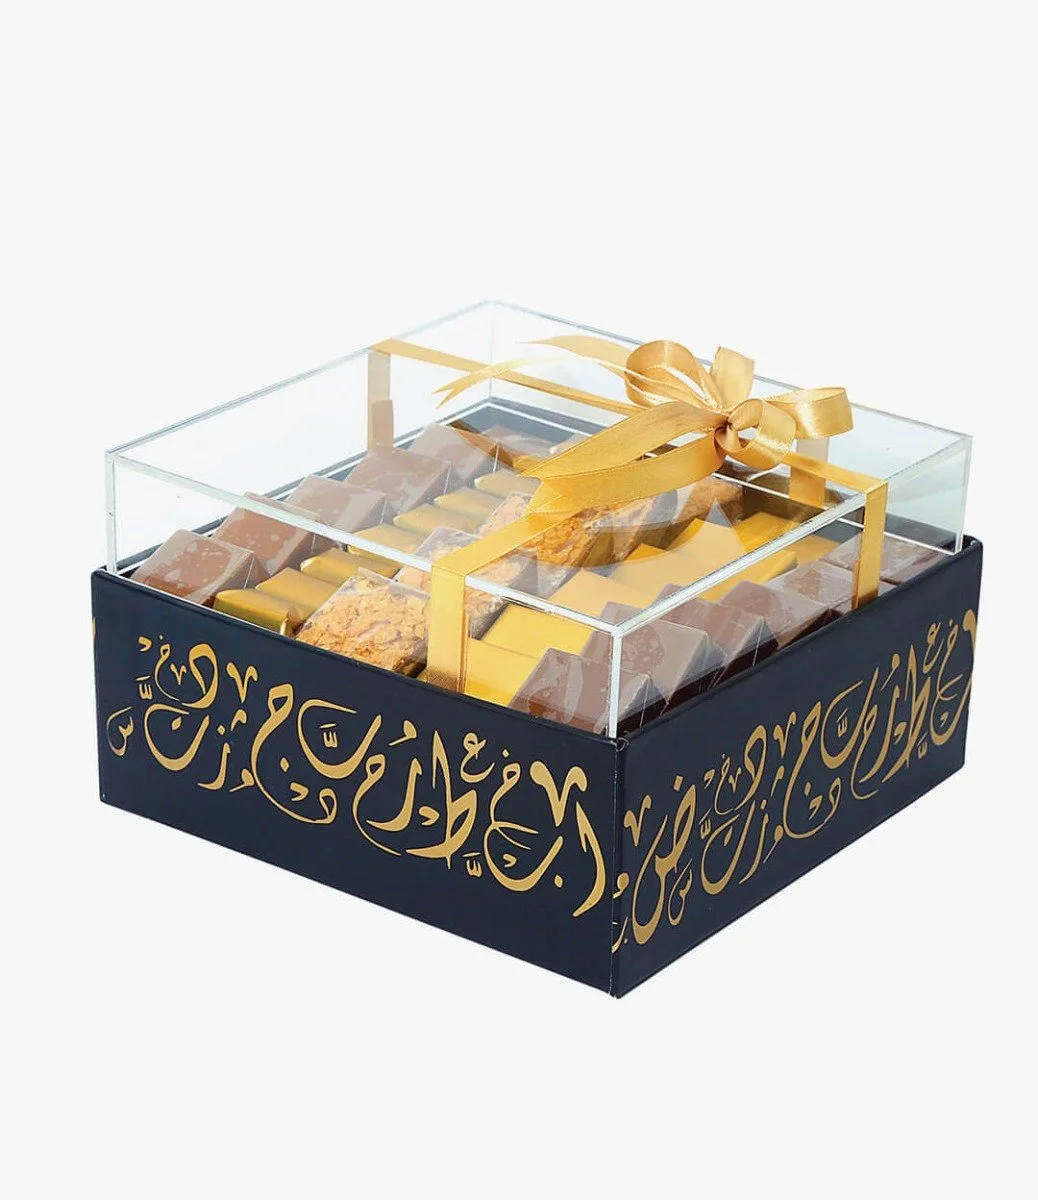 علبة شوكولاتة مربعة مع تخطيط عربي من ايكلا